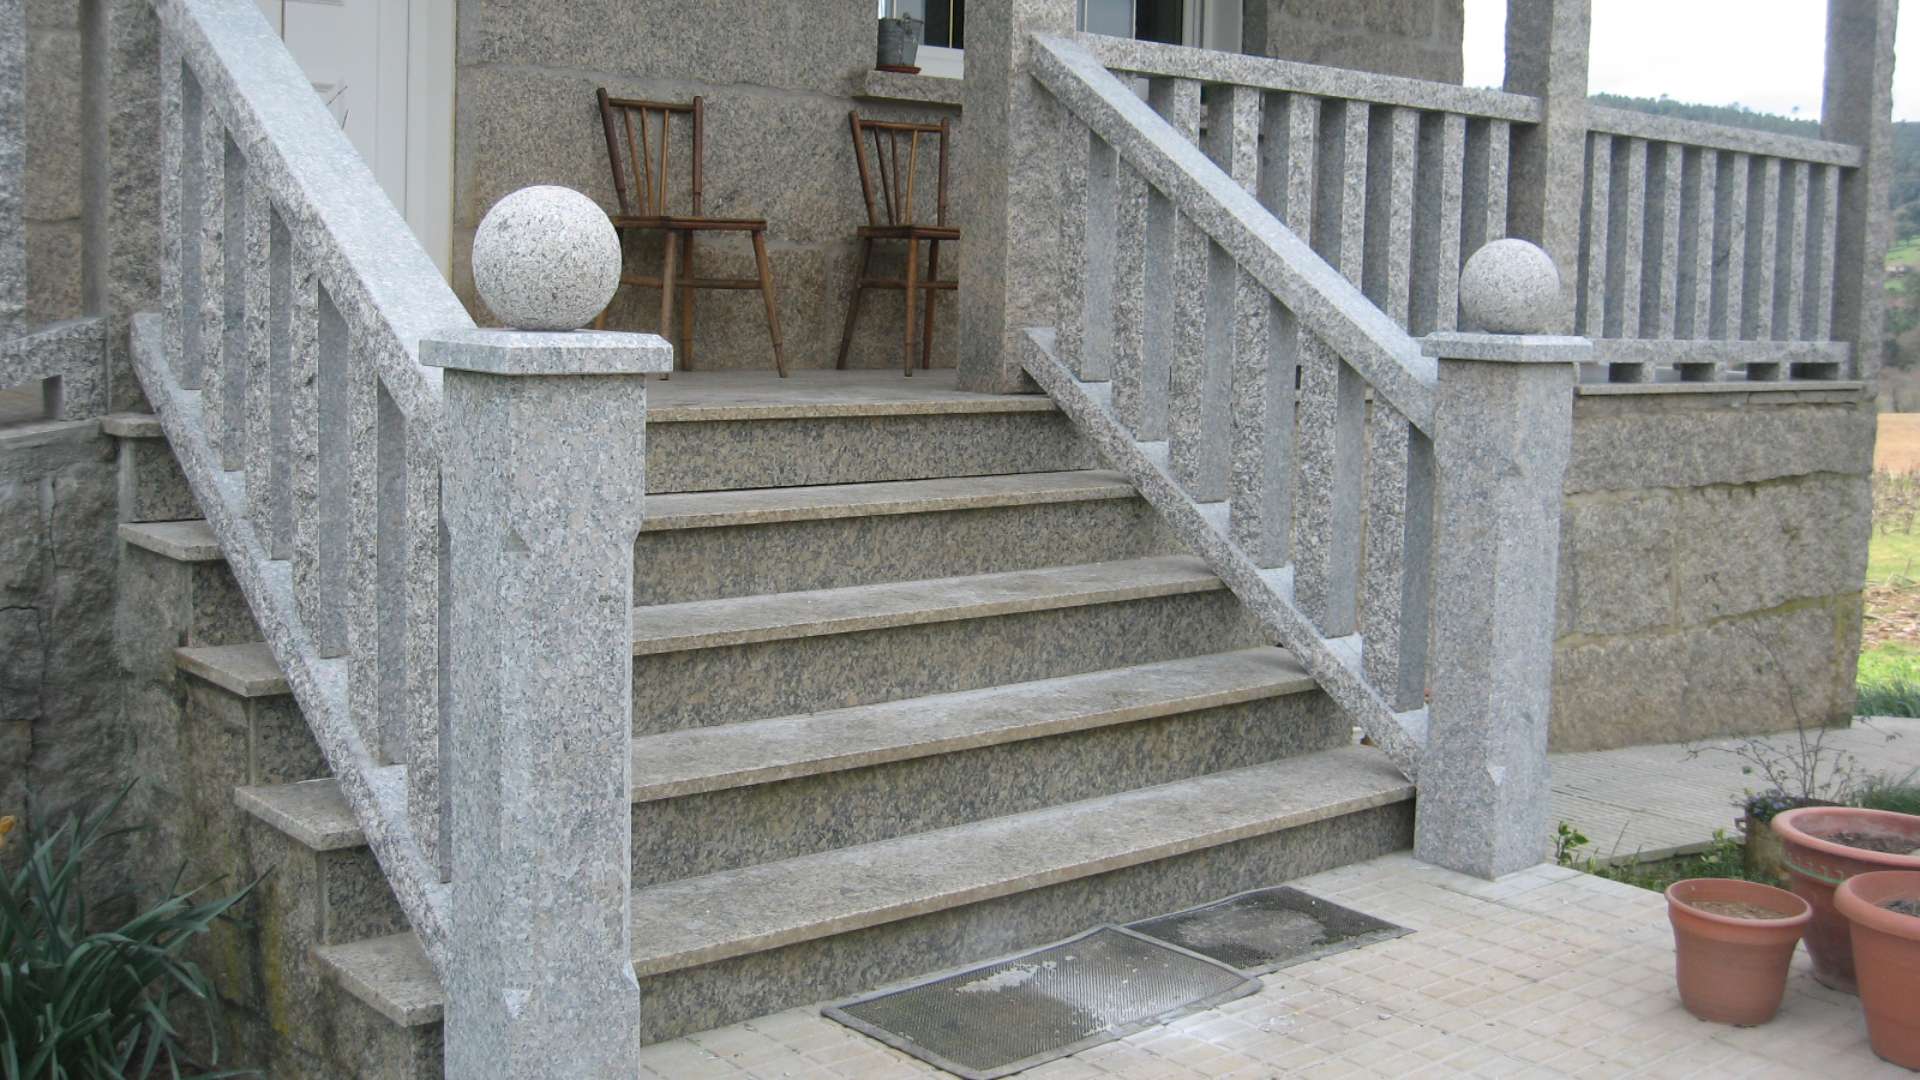 Balaustrada y escalera de piedra